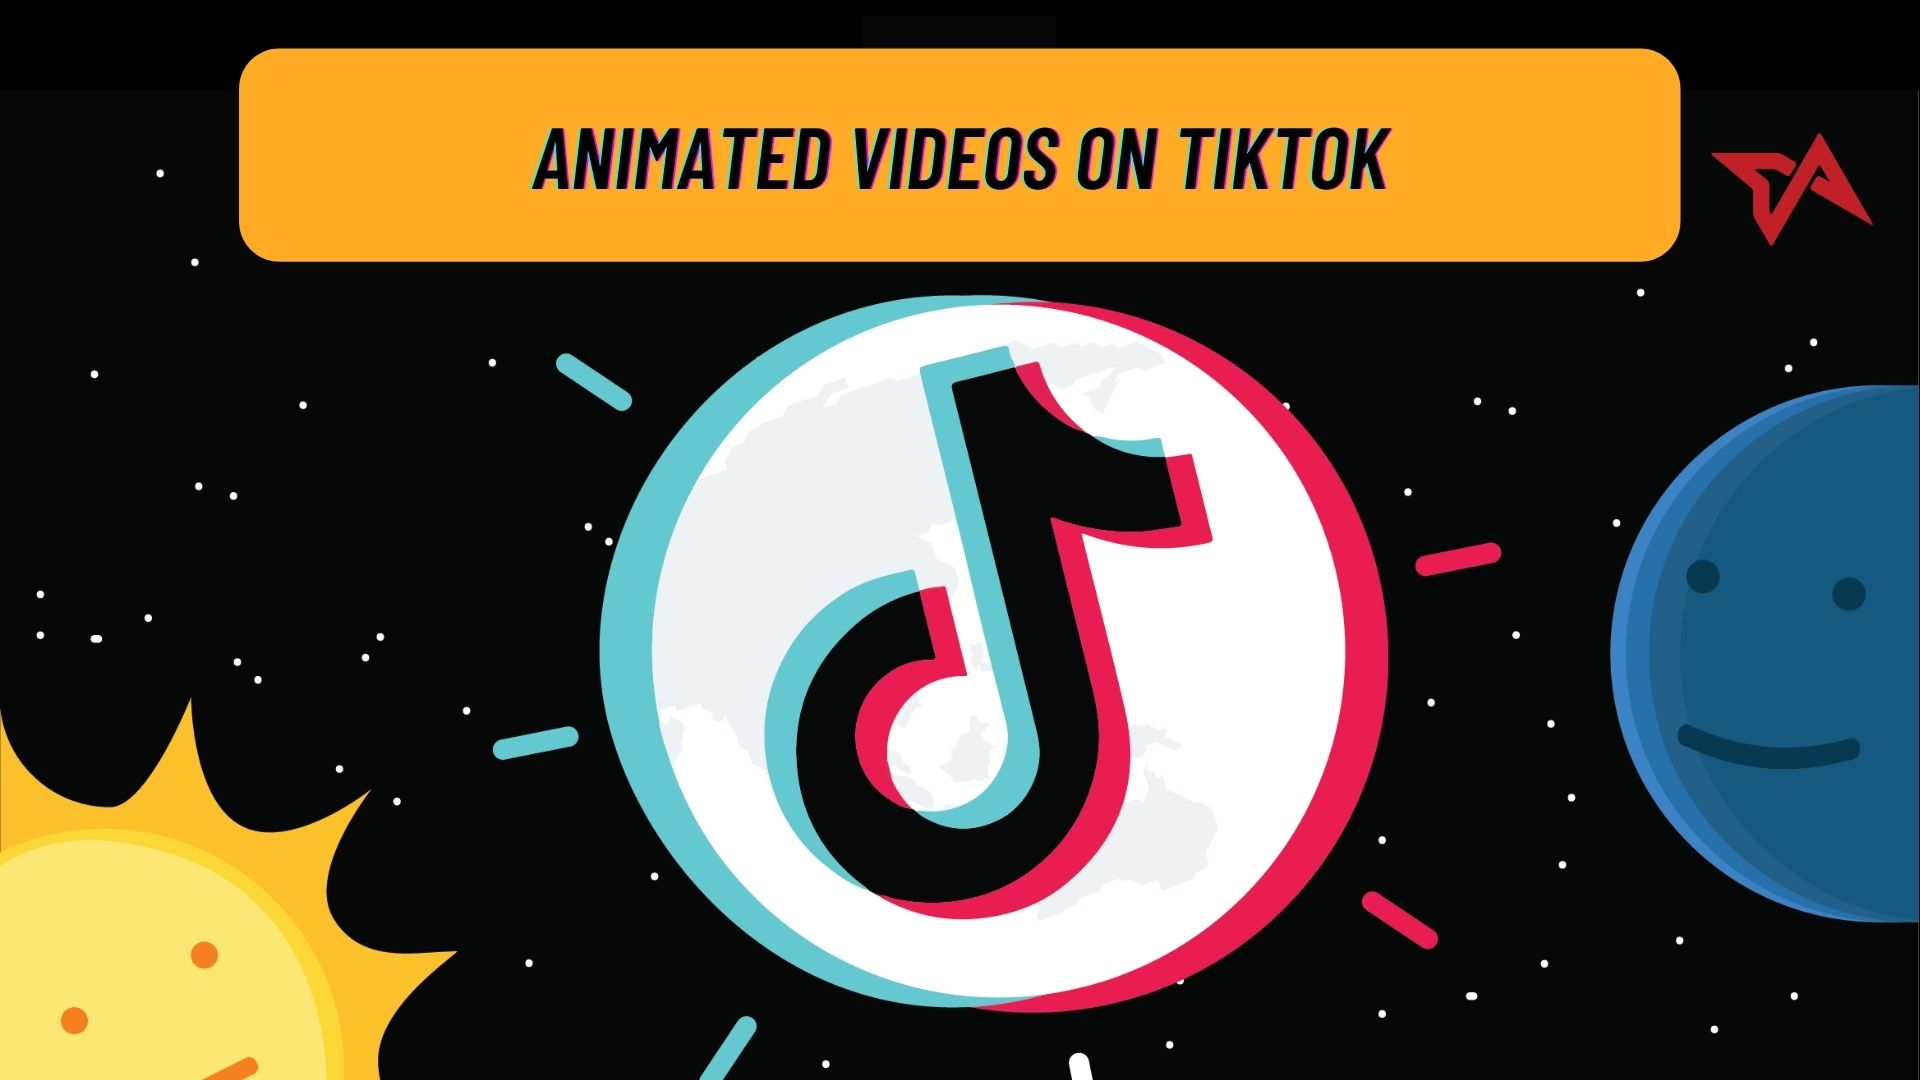 Animated videos on TikTok